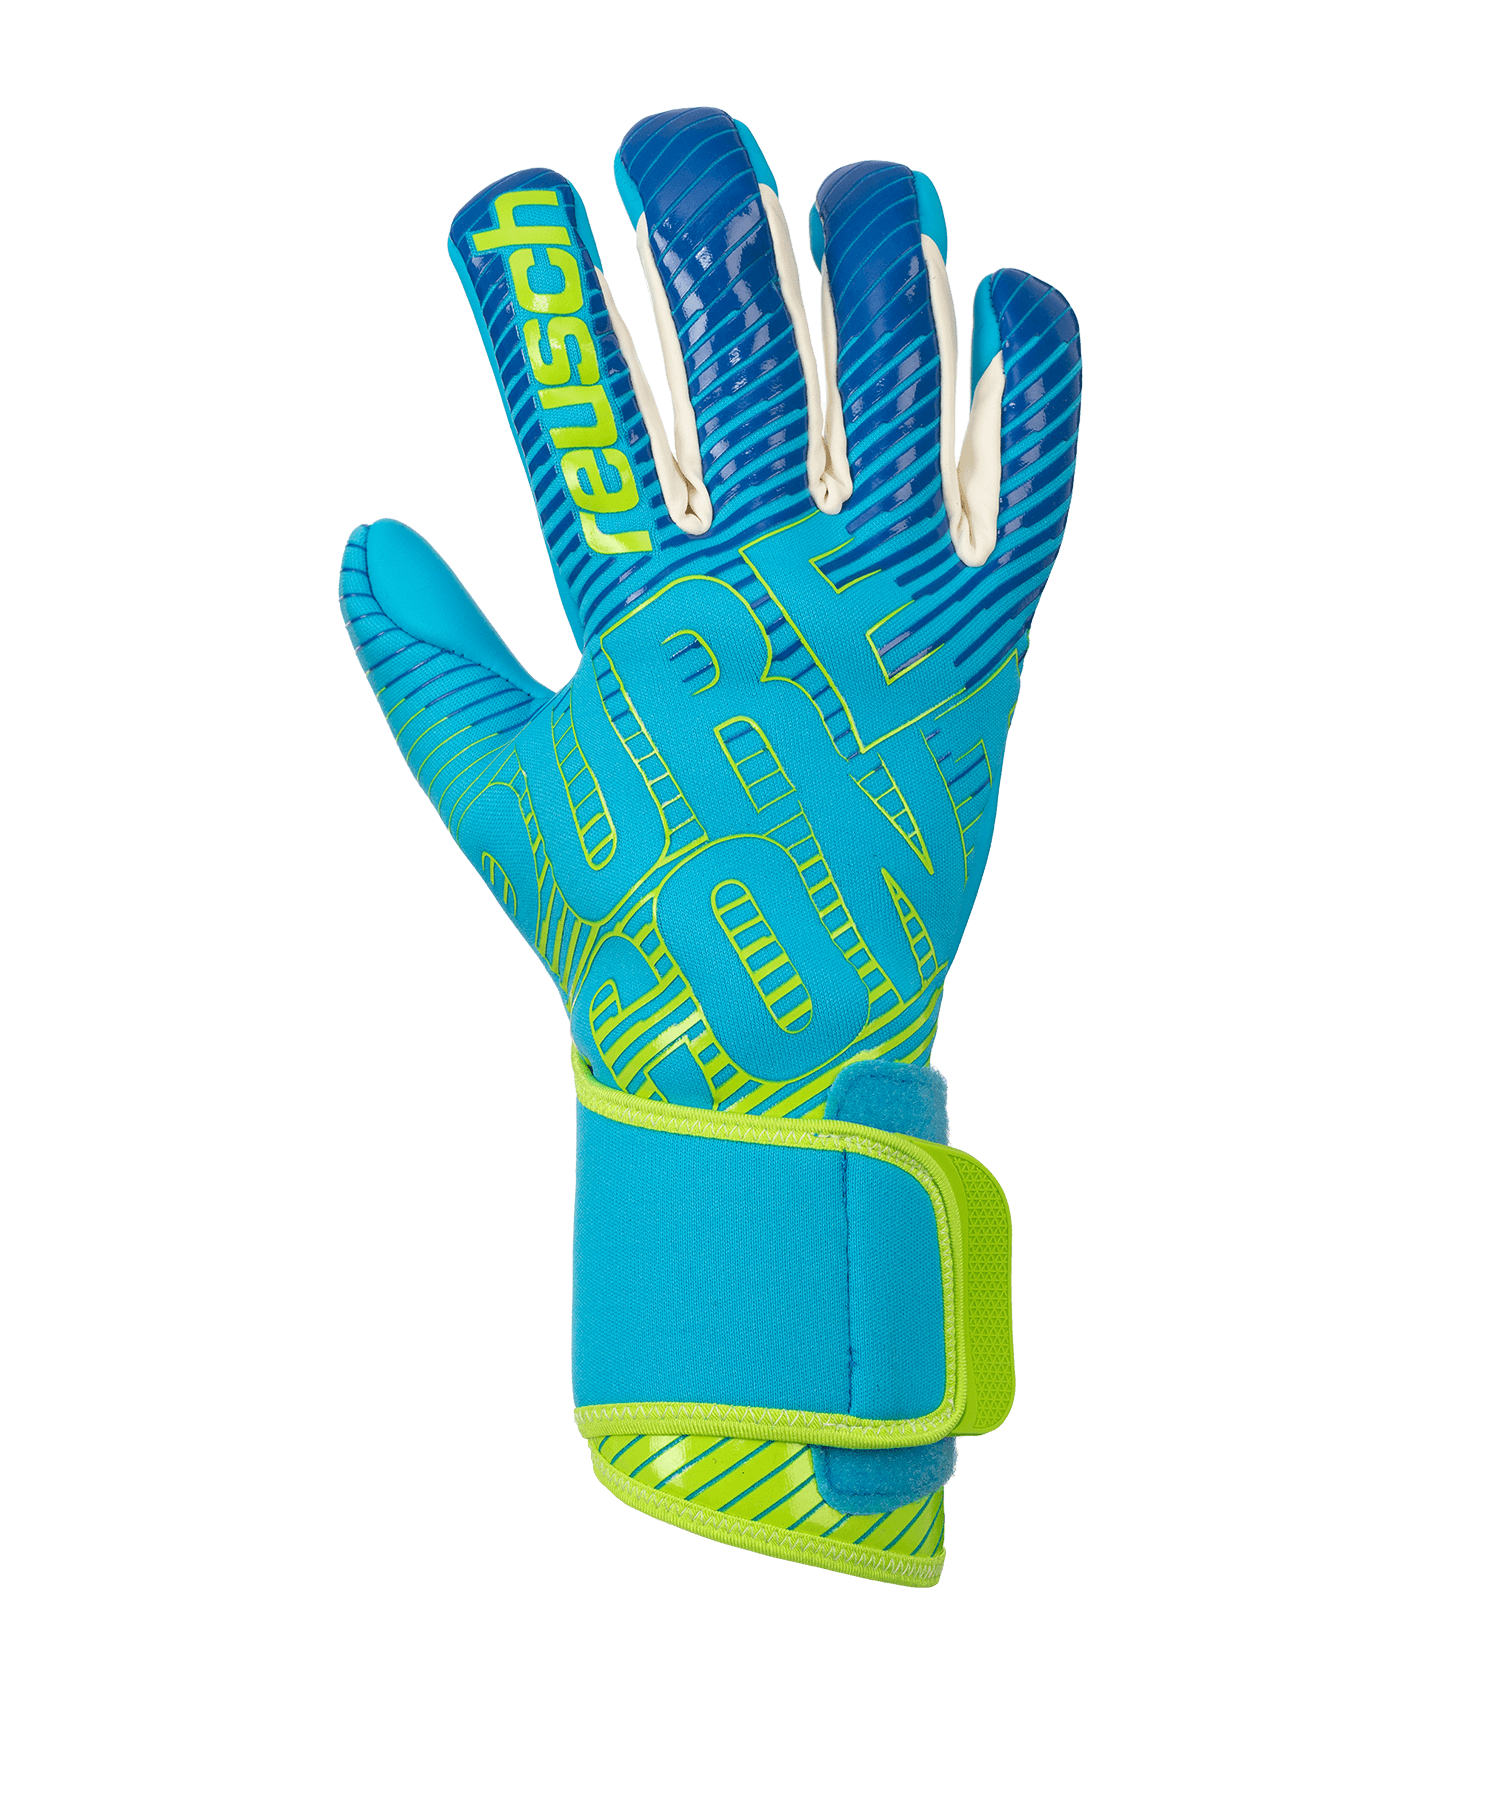 Torwarthandschuhe Reusch Pure Contact 3 AX2 TW Glove